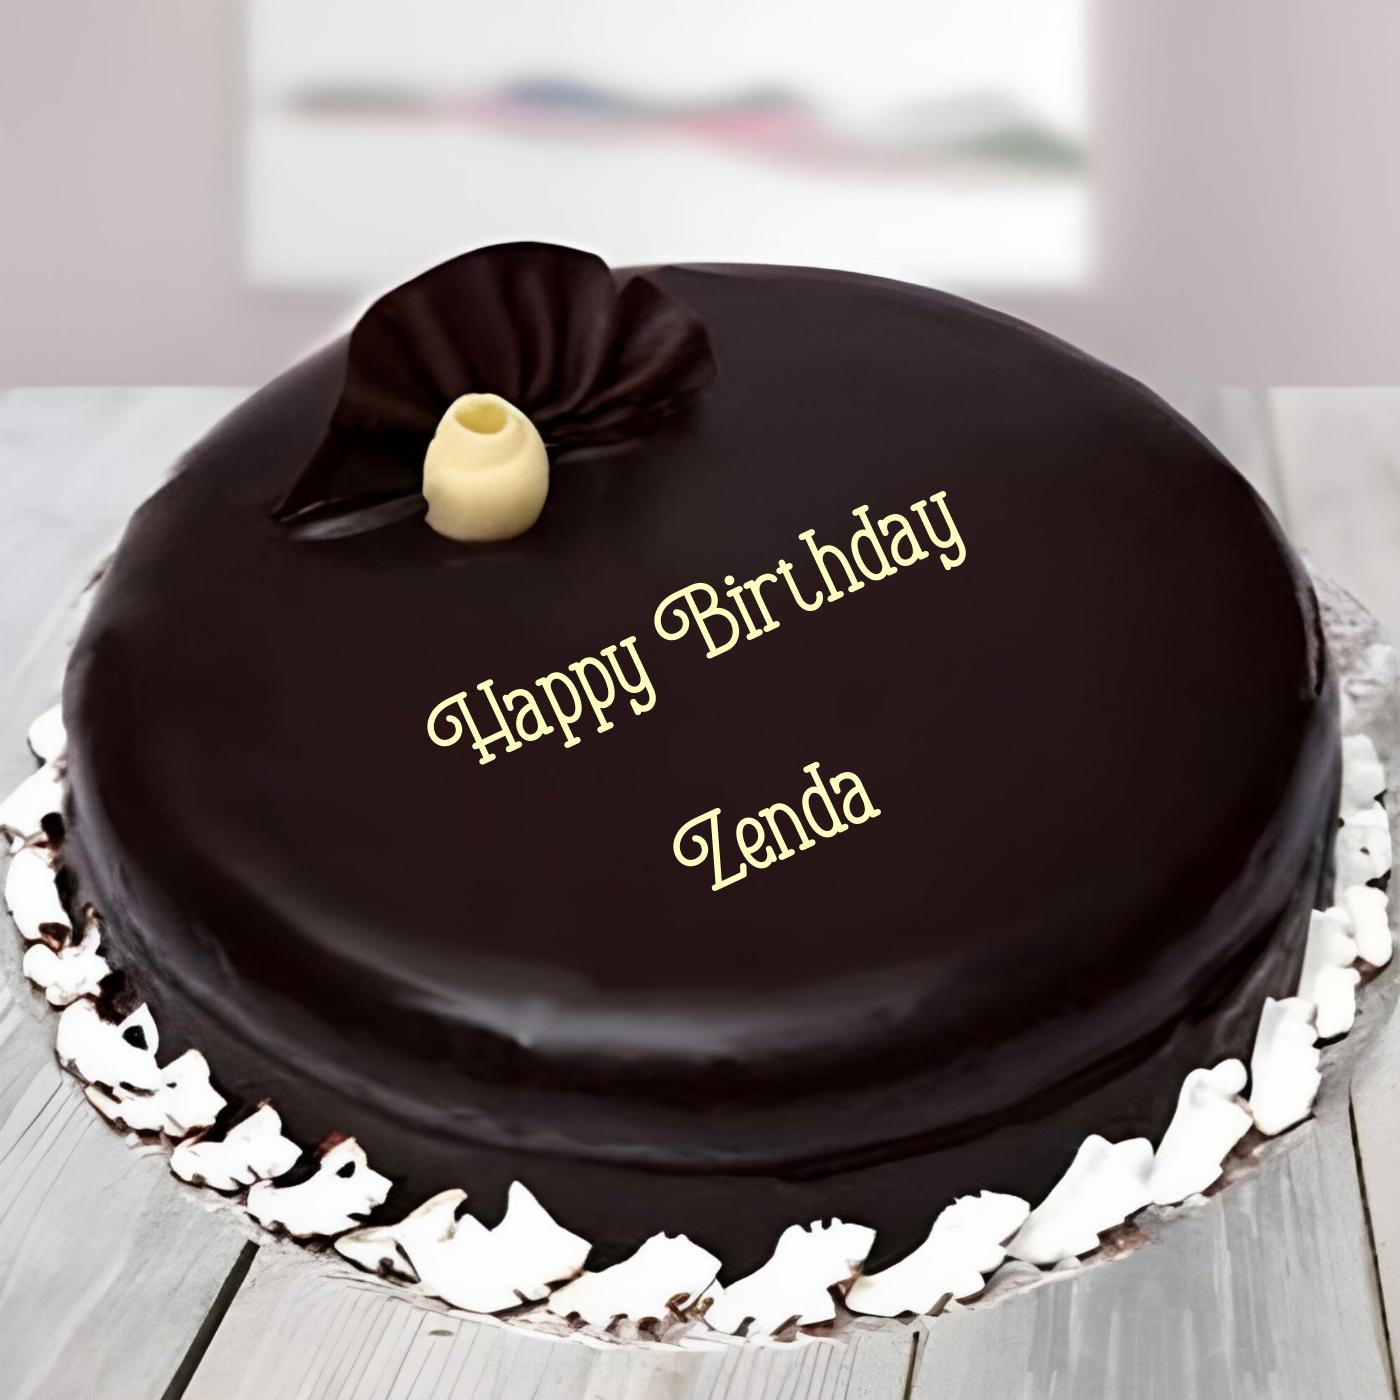 Happy Birthday Zenda Beautiful Chocolate Cake